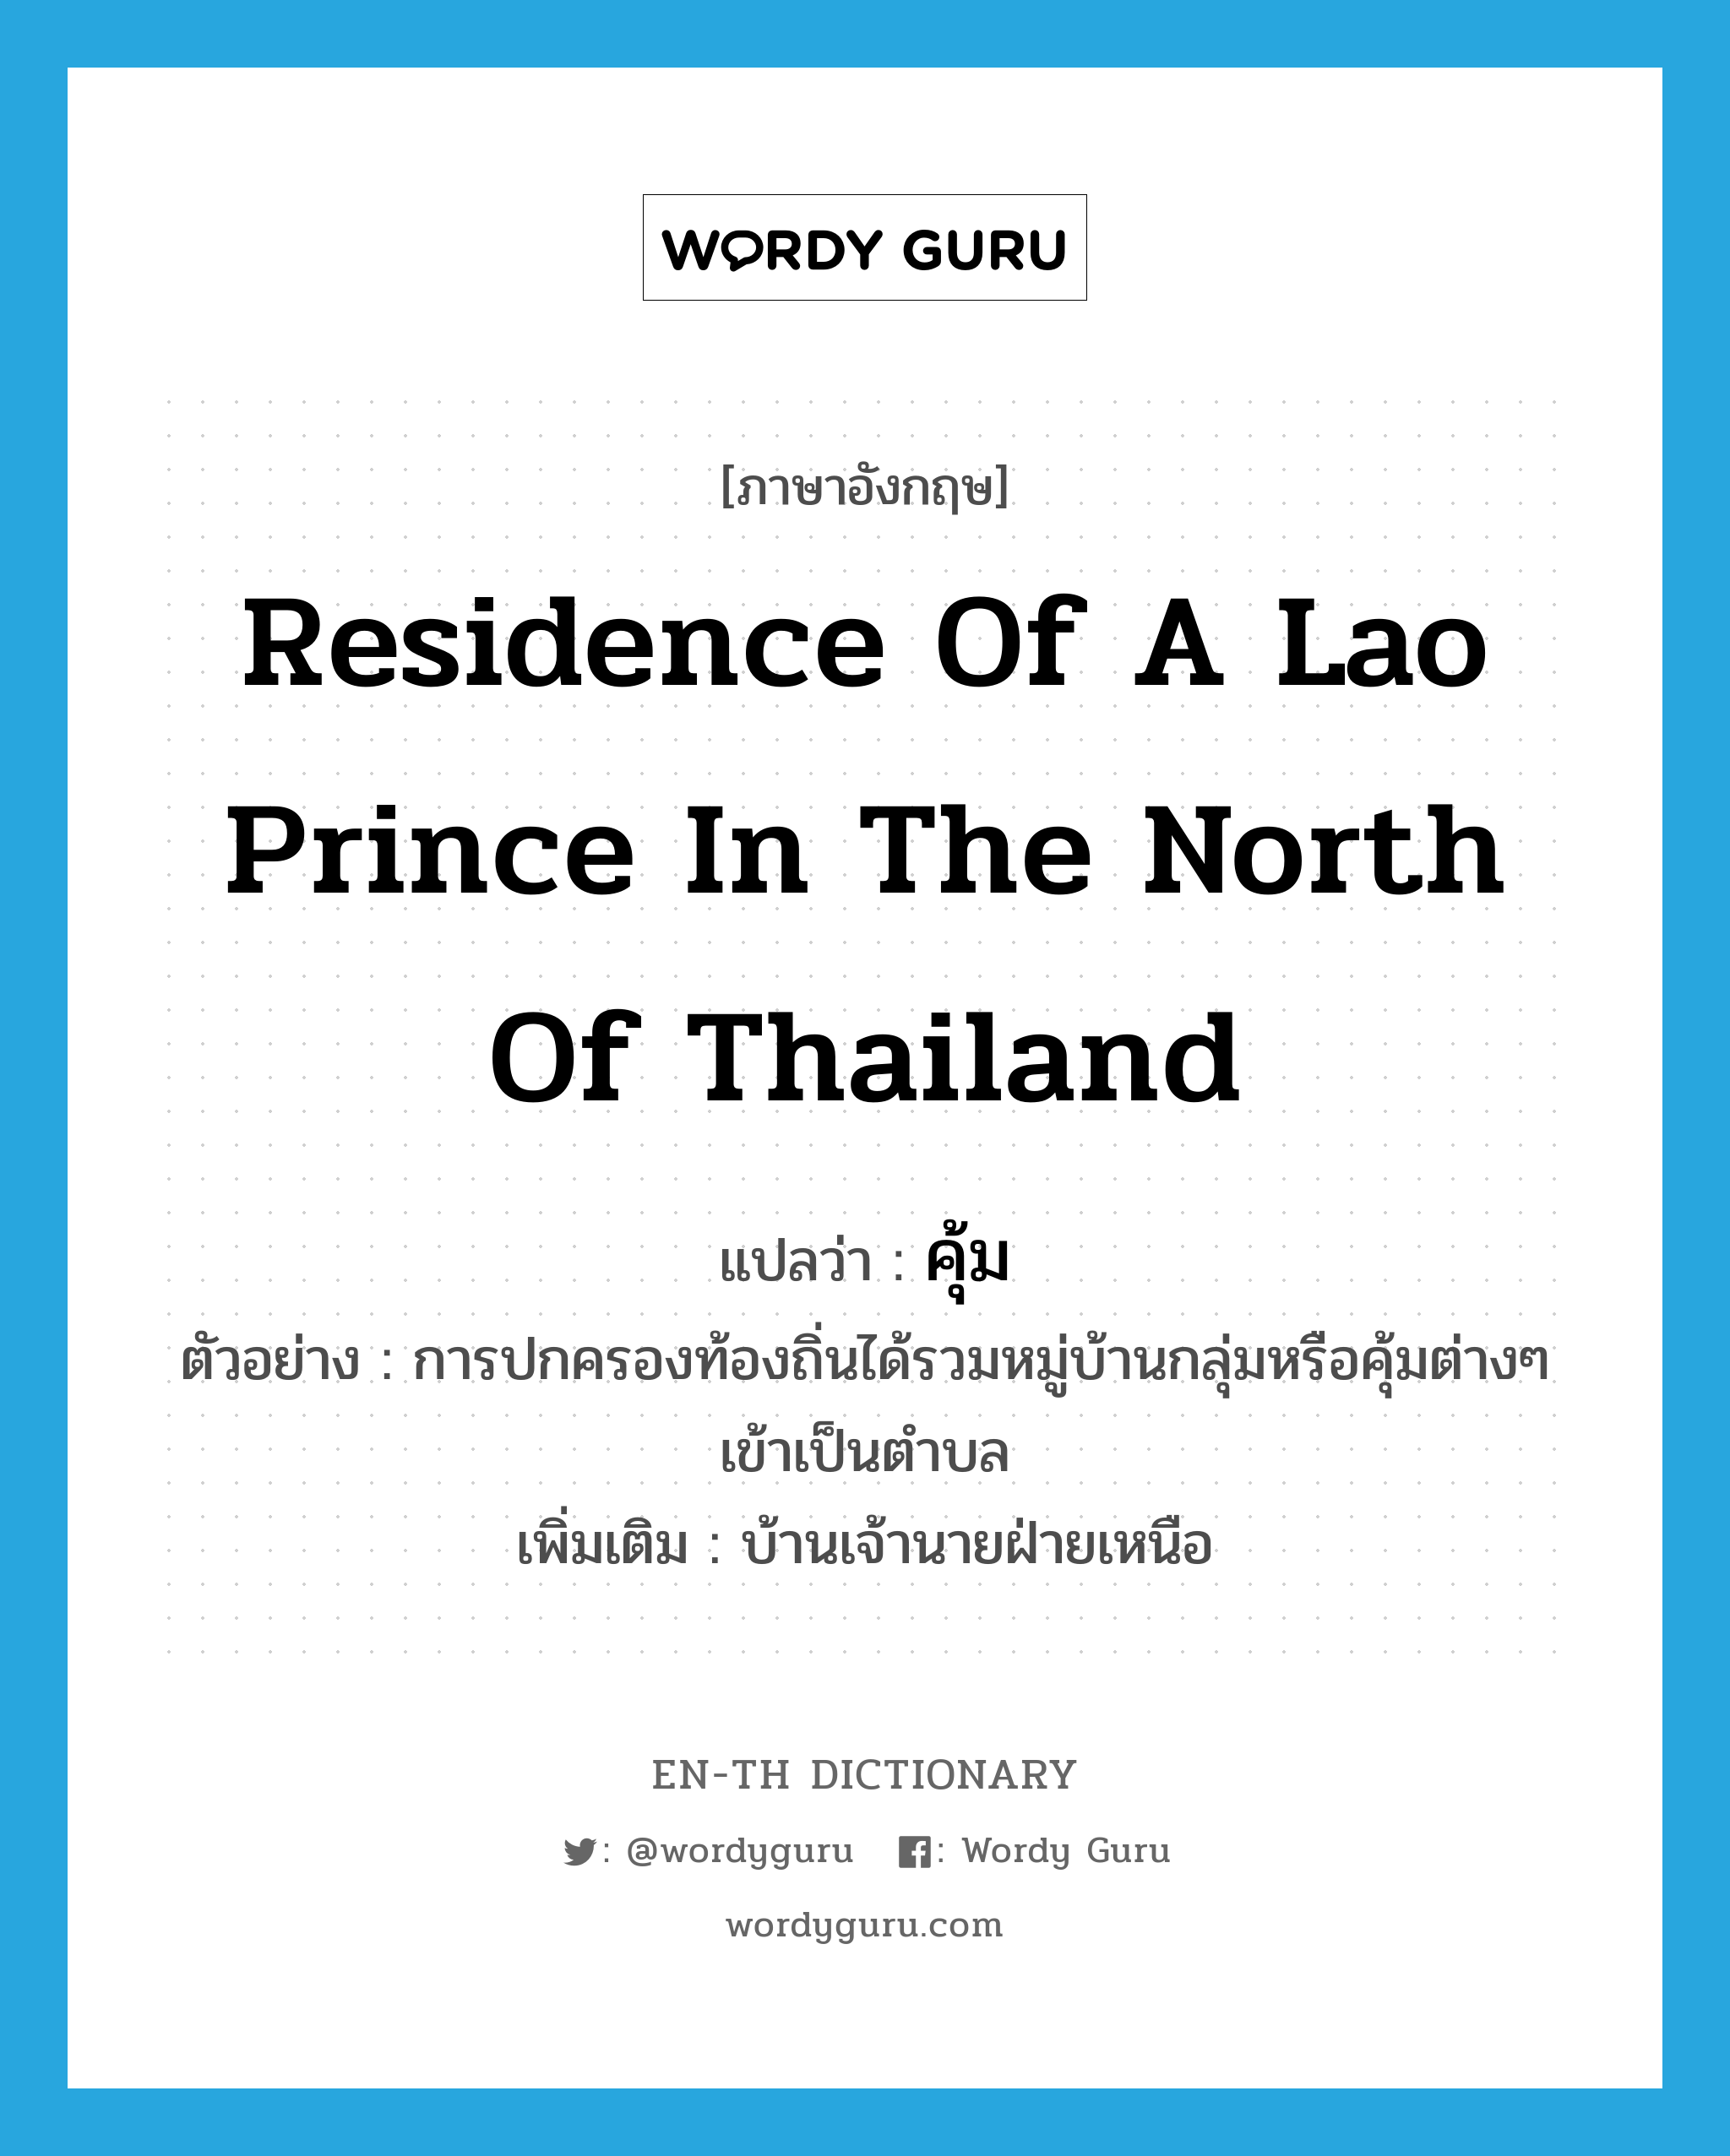 คุ้ม ภาษาอังกฤษ?, คำศัพท์ภาษาอังกฤษ คุ้ม แปลว่า residence of a Lao prince in the north of Thailand ประเภท N ตัวอย่าง การปกครองท้องถิ่นได้รวมหมู่บ้านกลุ่มหรือคุ้มต่างๆ เข้าเป็นตำบล เพิ่มเติม บ้านเจ้านายฝ่ายเหนือ หมวด N